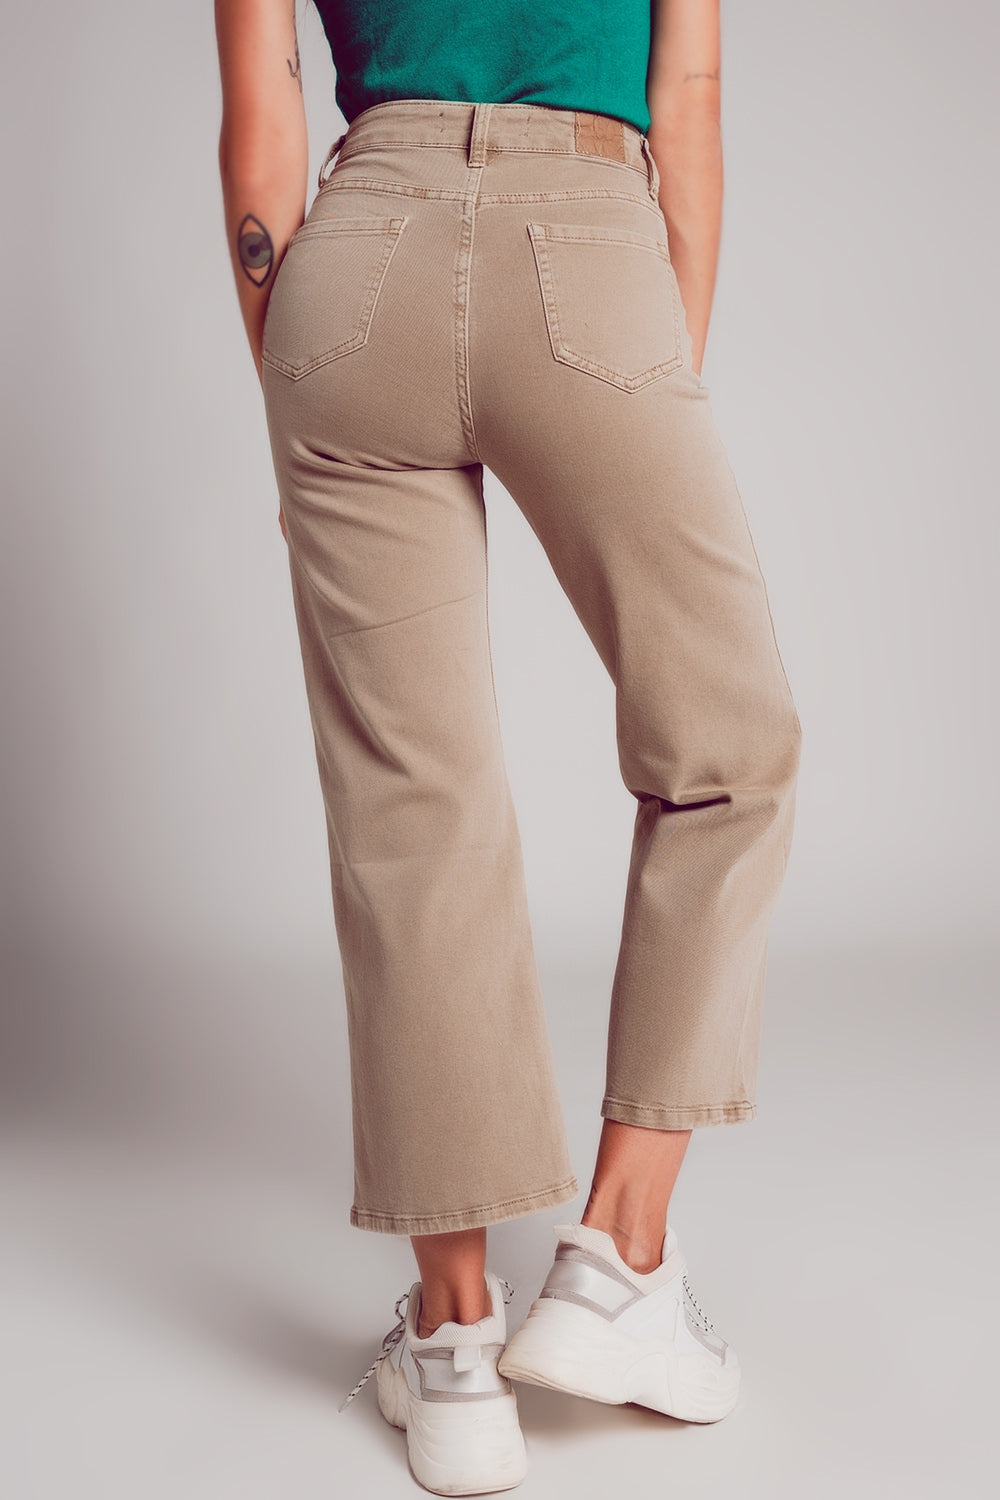 Cropped wide leg jeans in beige color Szua Store